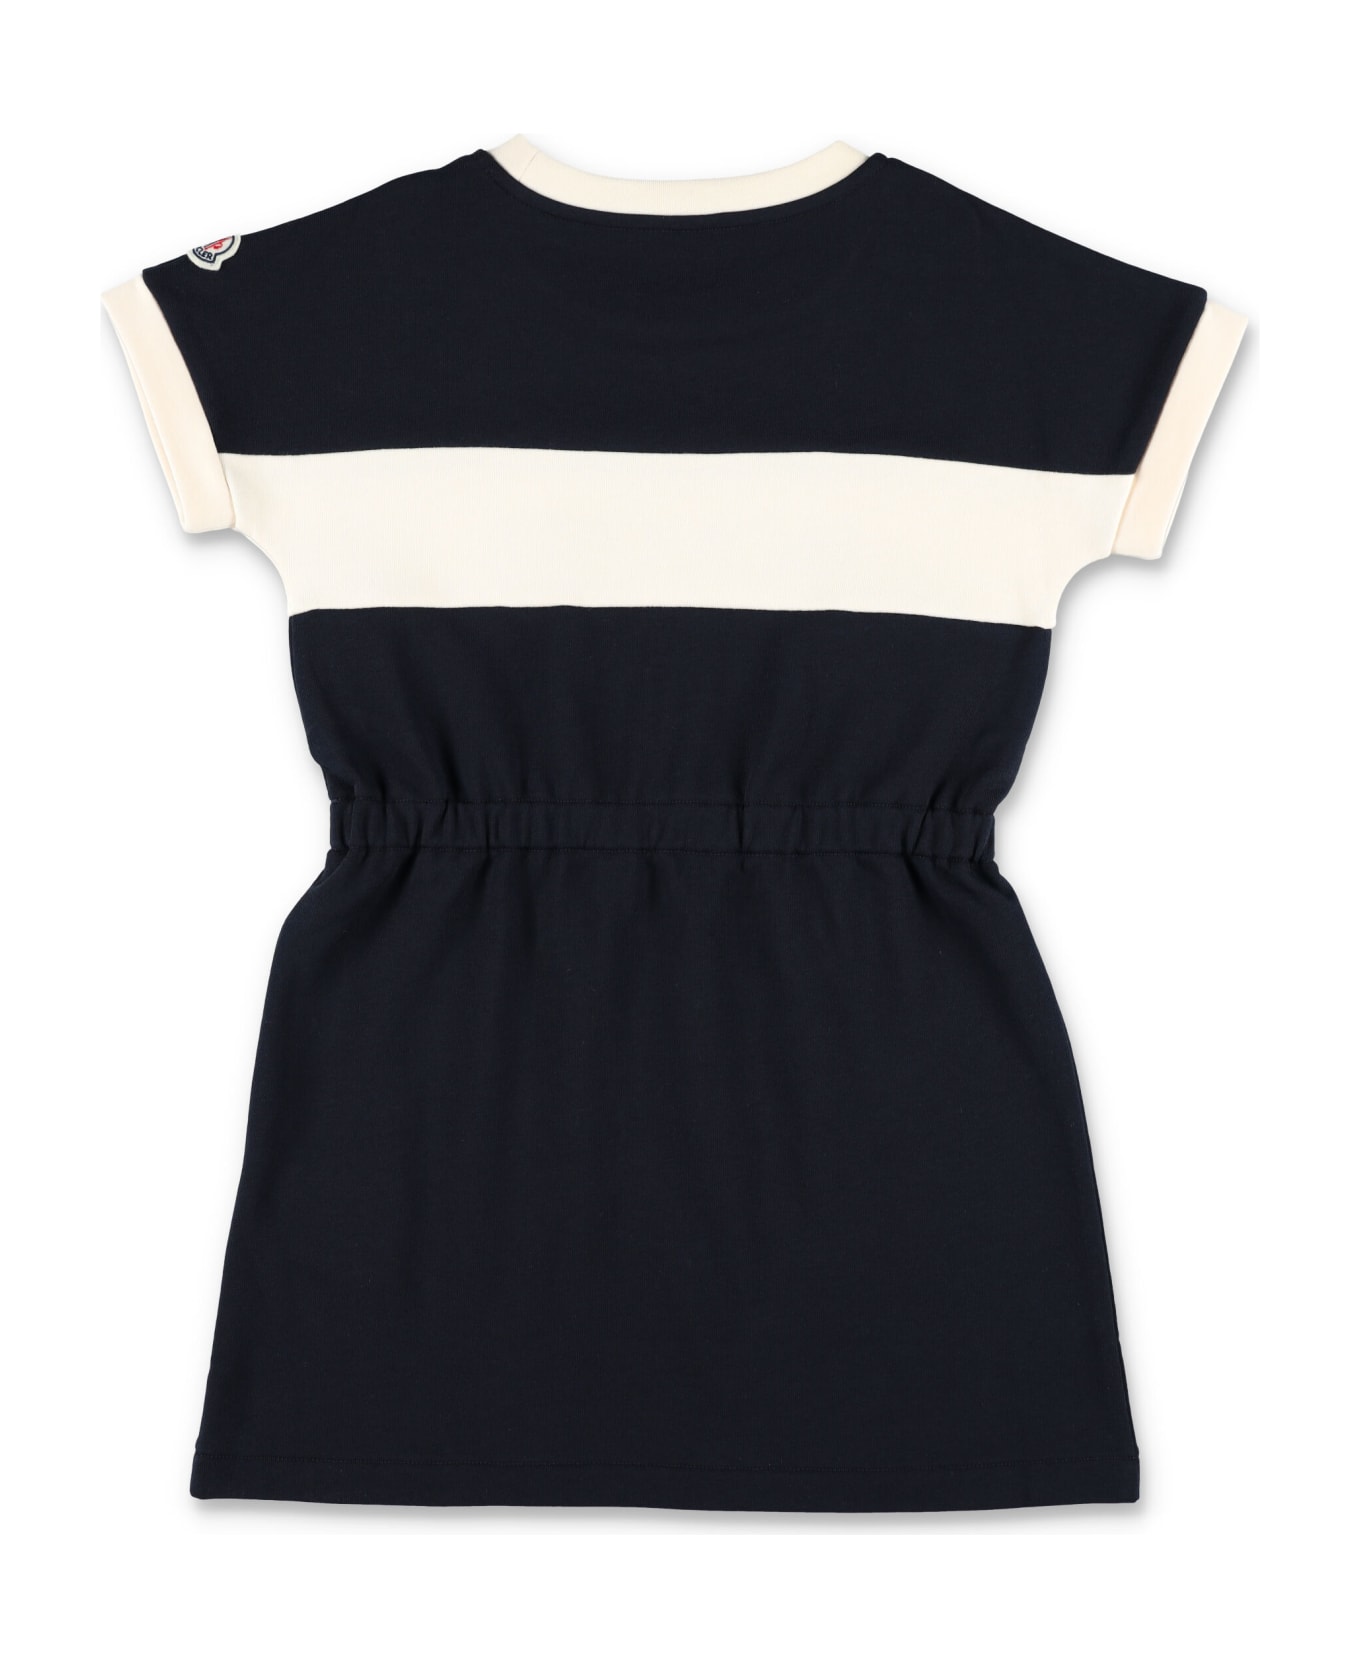 Moncler Logo Dress - BLACK/WHITE